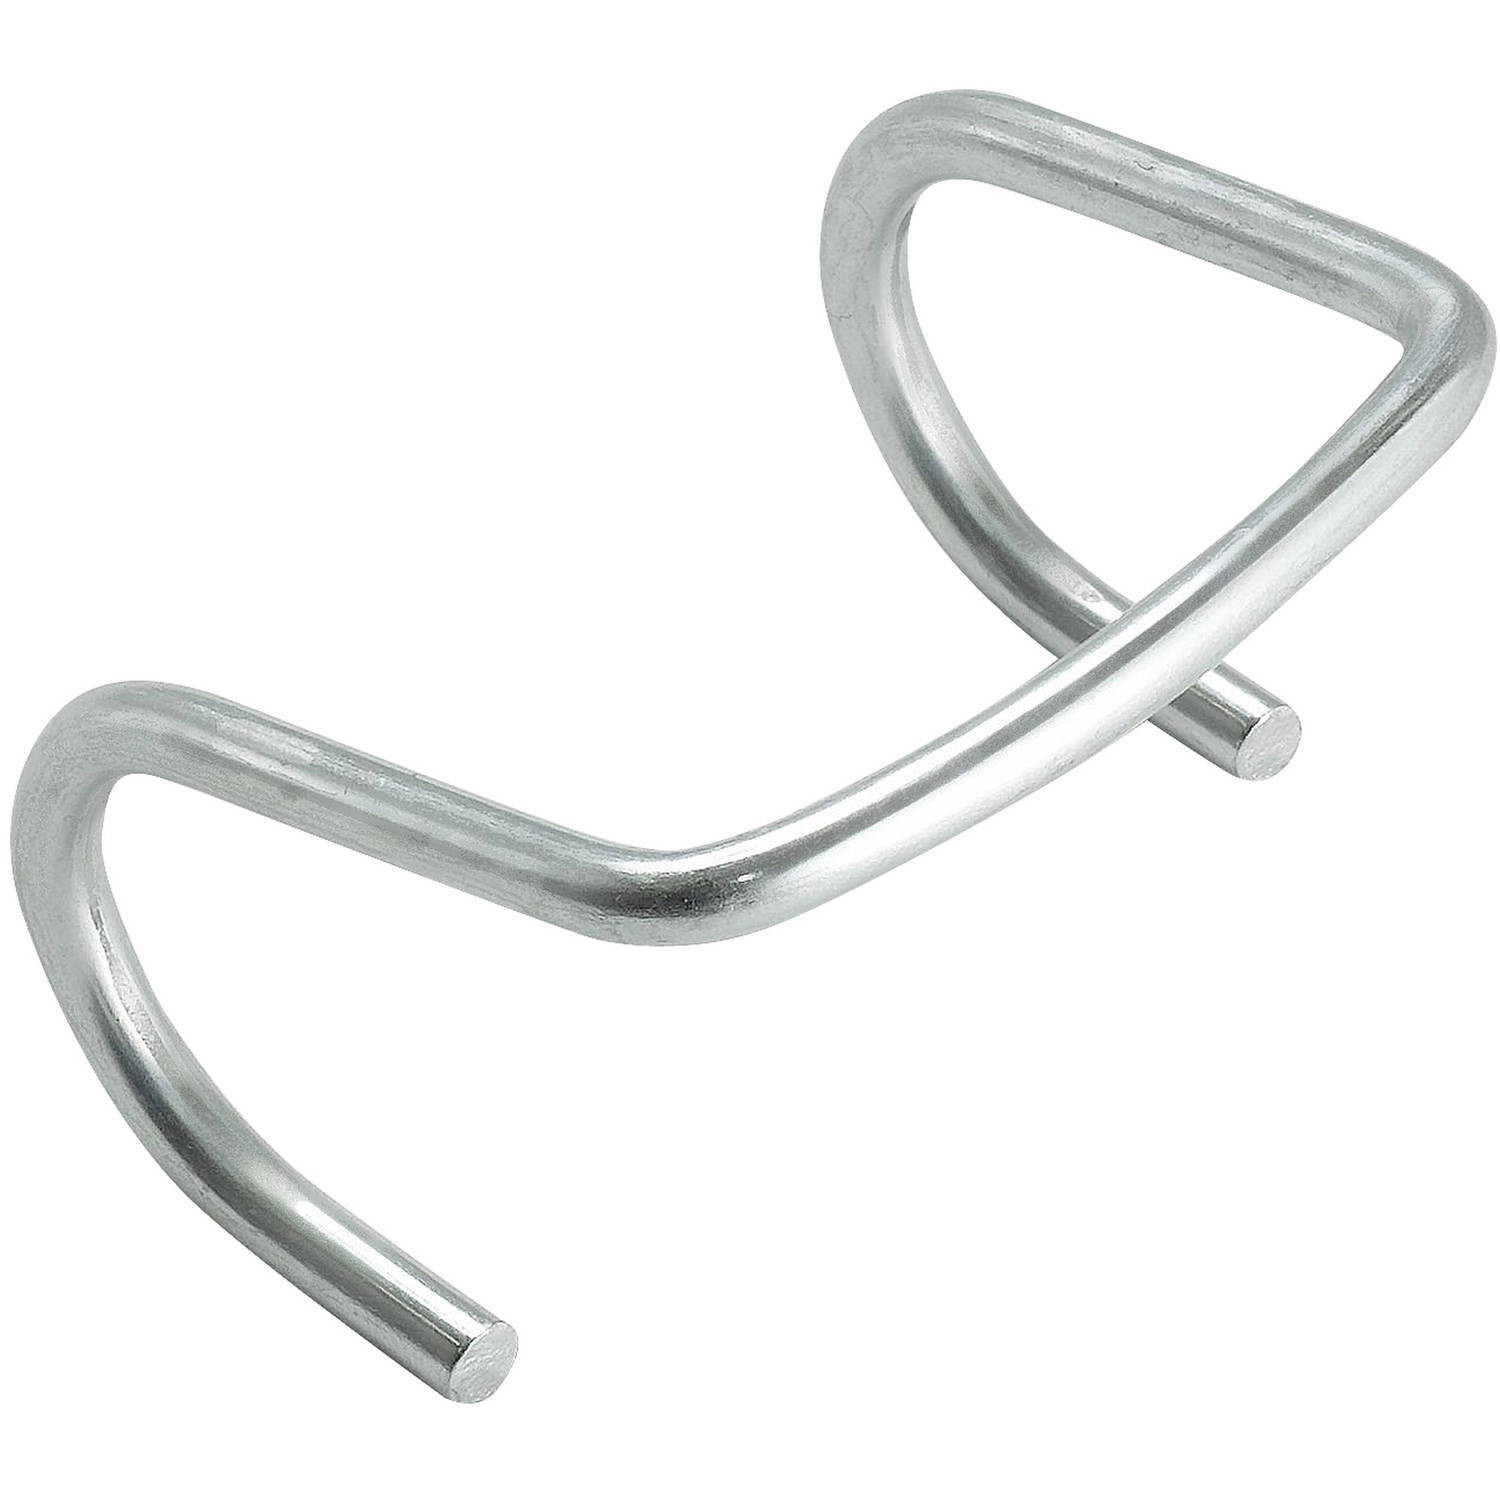 Clips de Metal universales para la banda de trampolín saltando Mat, conjunto de 10-092243569264-0